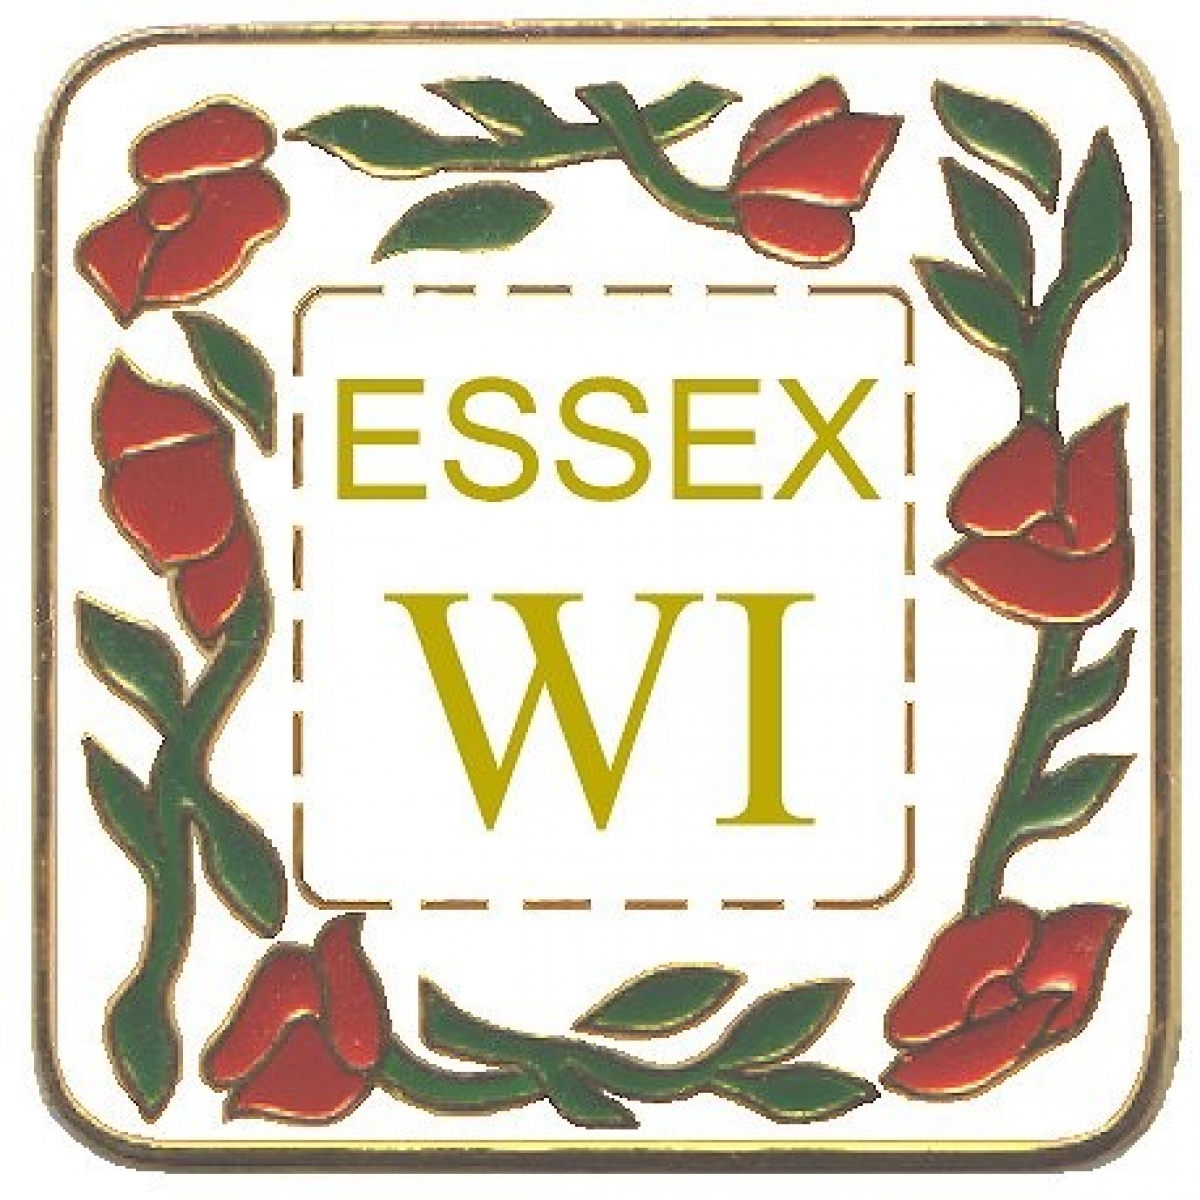 Federation of Essex Women's Institutes eCards